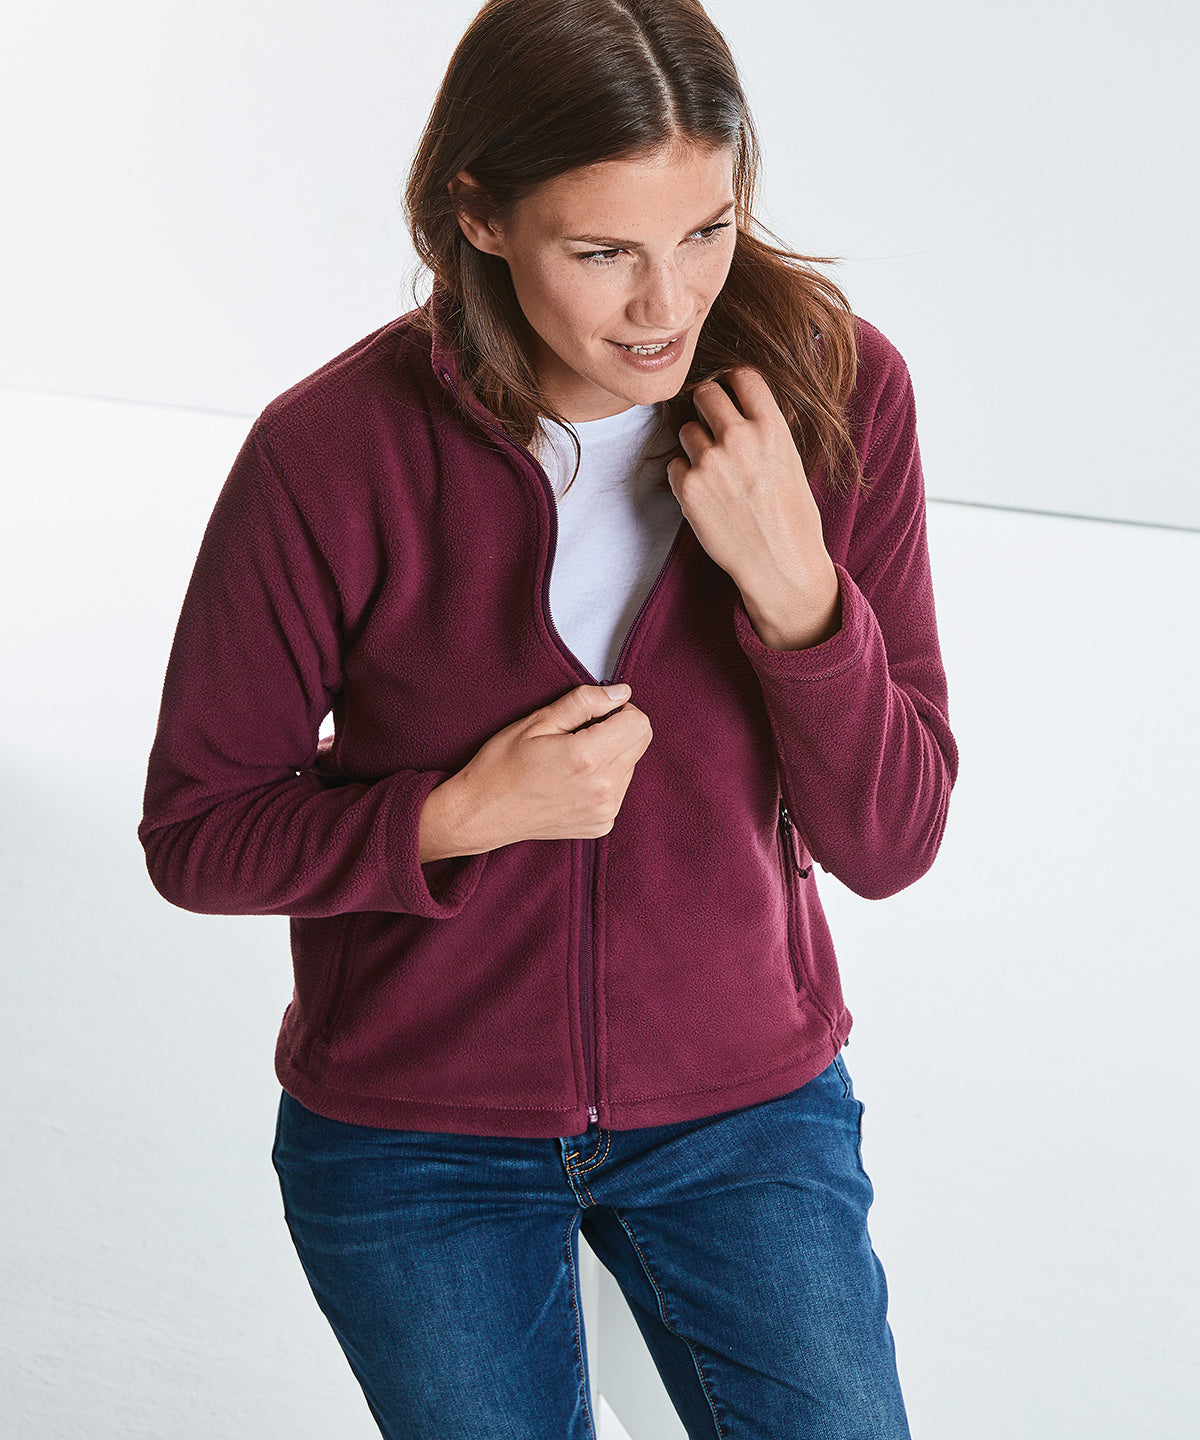 Women's full-zip outdoor fleece